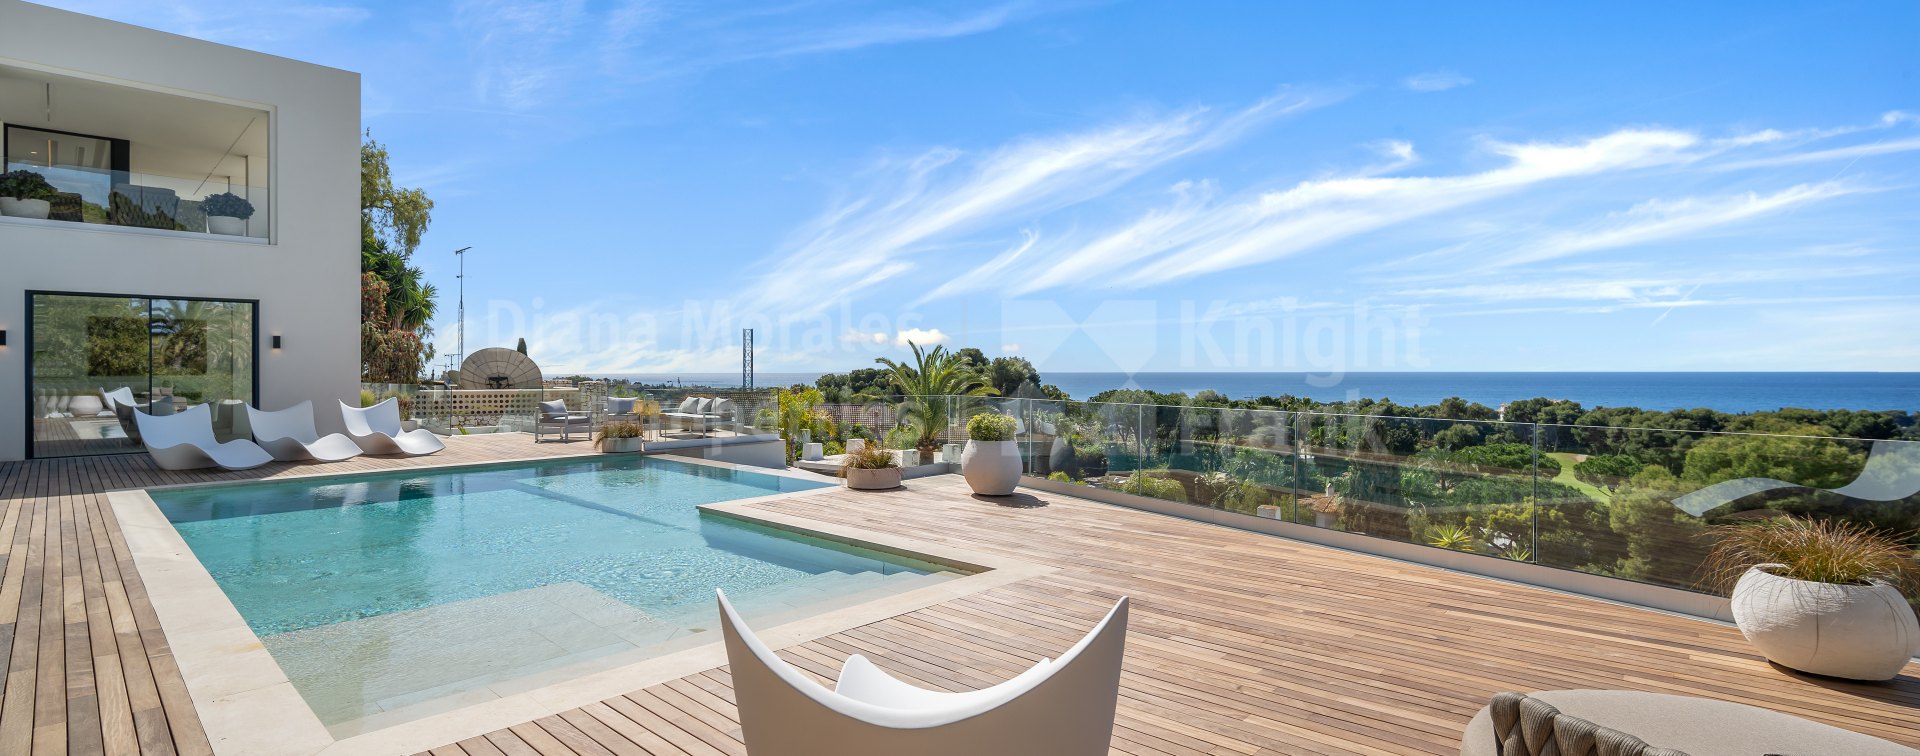 Rio Real, Villa avec piscine à débordement et vue panoramique